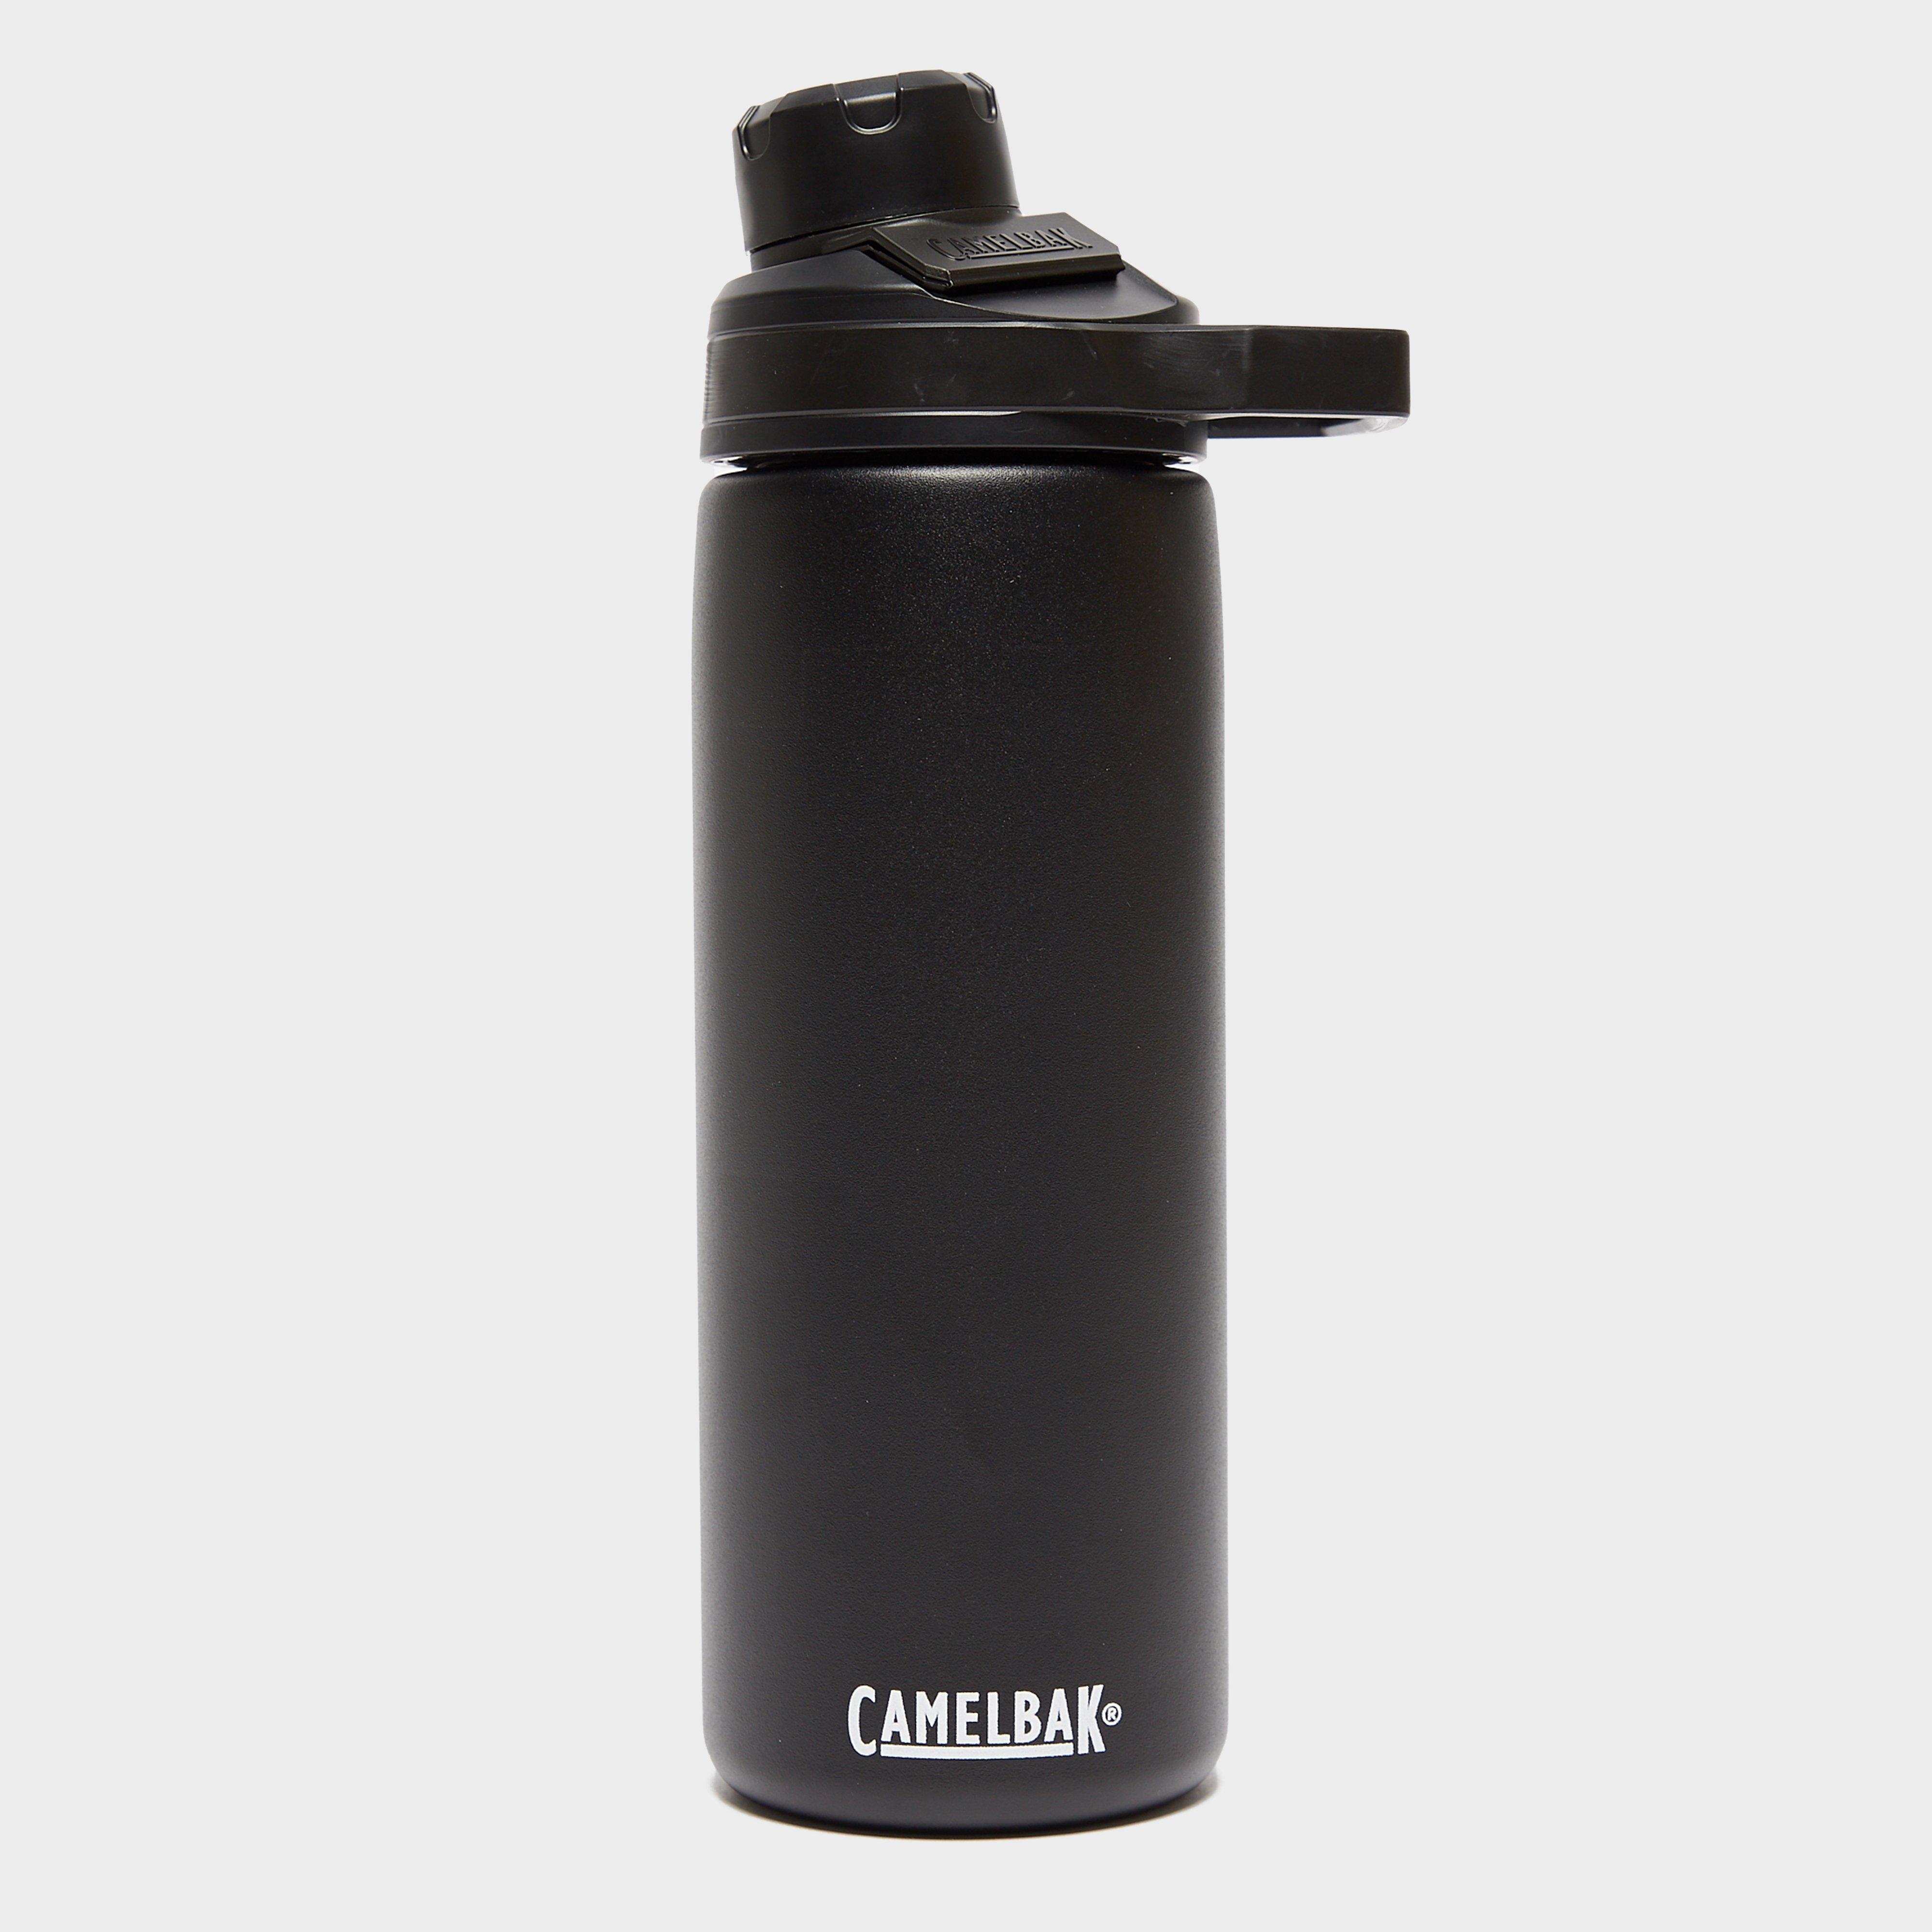 Camelbak Chute Mag 600ml Insulated Bottle - Black/blk  Black/blk